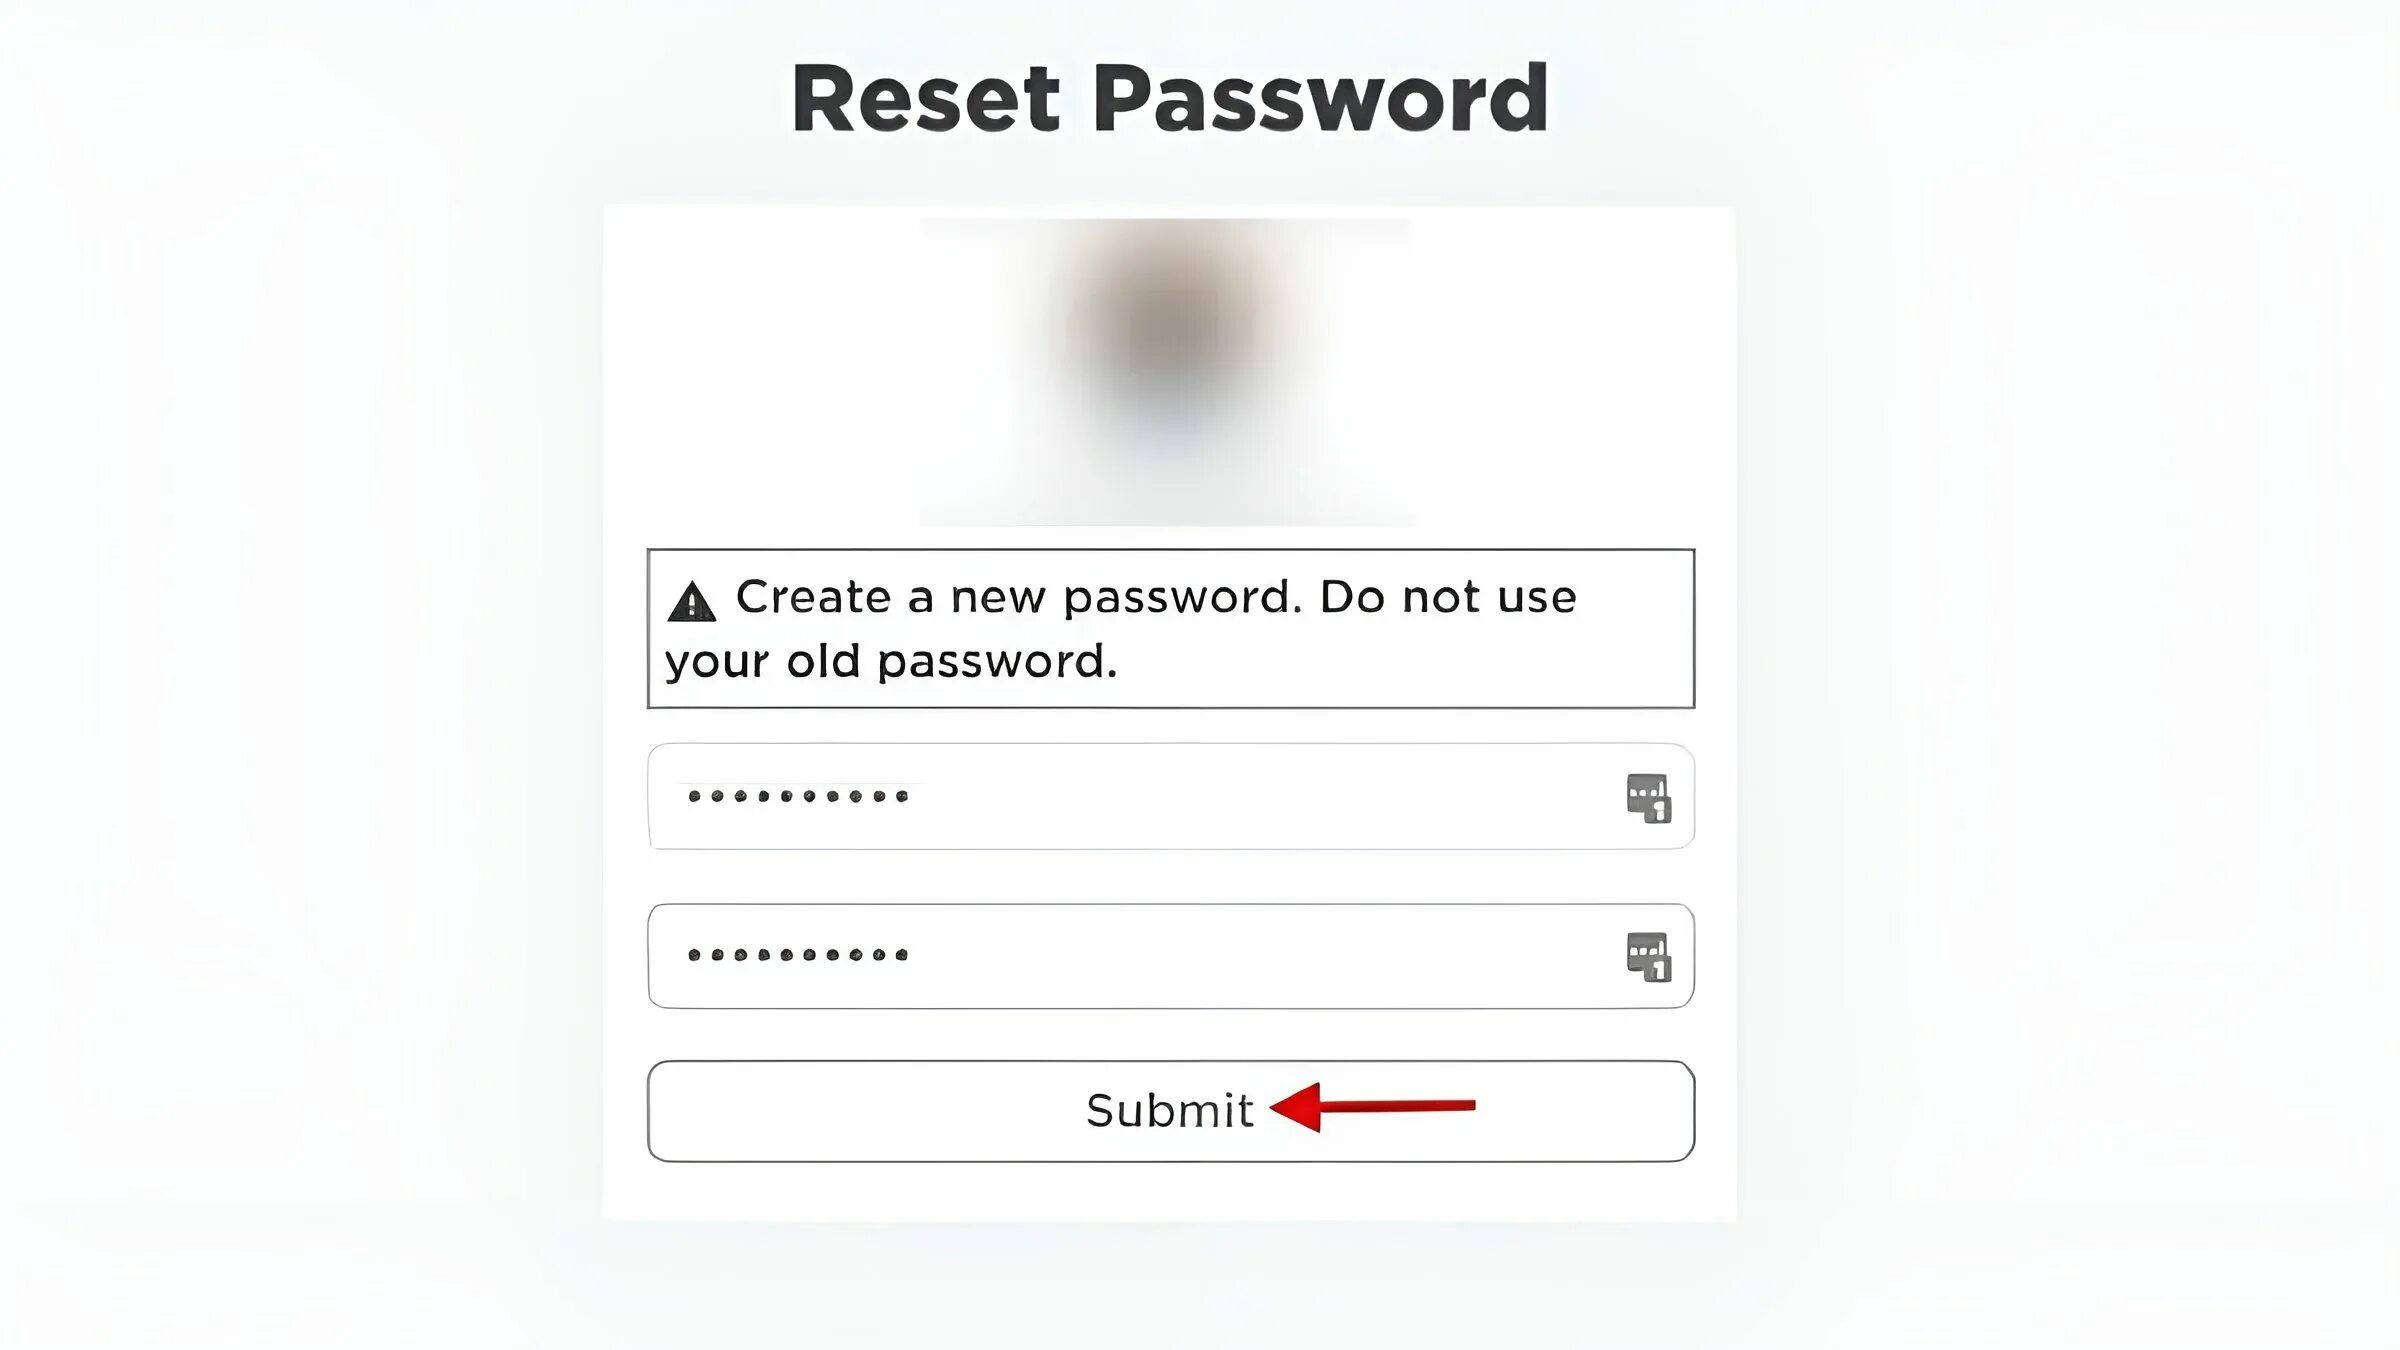 Как восстановить пароль в роблоксе если забыл. Пароль РОБЛОКСА пароль. Логин и пароль РОБЛОКС. Пароль для регистрации в РОБЛОКС. Придумать пароль для РОБЛОКС.